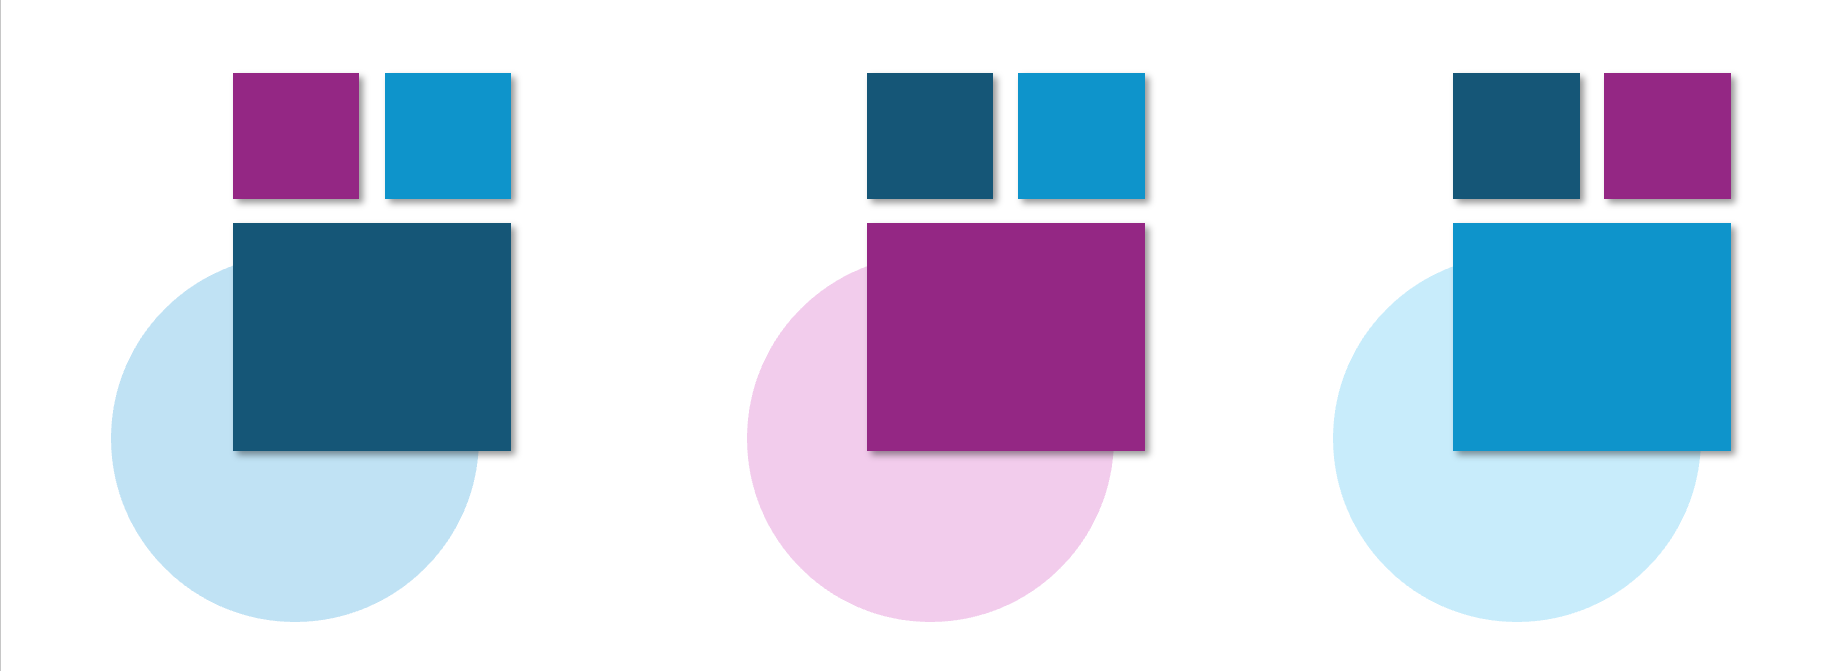 Drei Farbkombinationen aus den Farben Dunkelblau, Violett und Blau